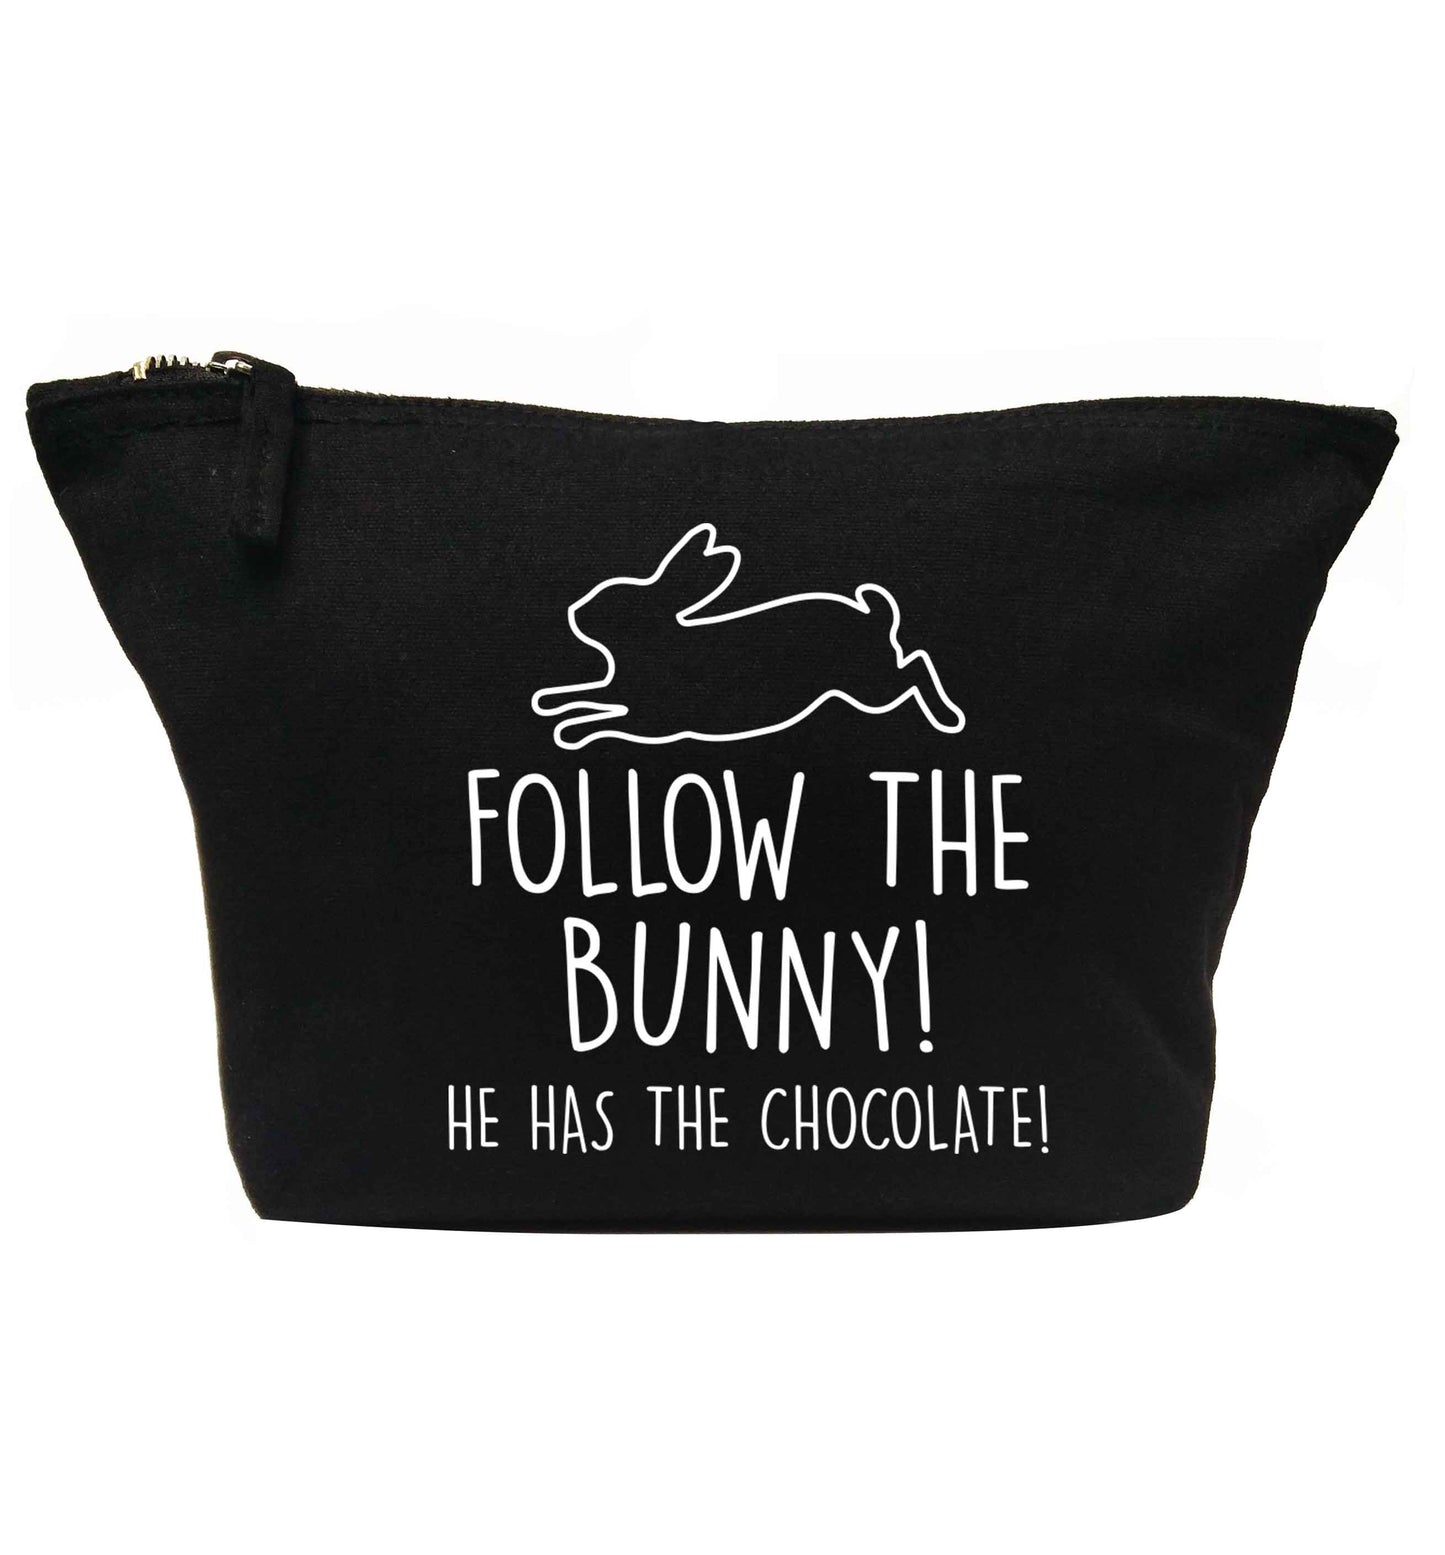 Follow the bunny! He has the chocolate | Makeup / wash bag